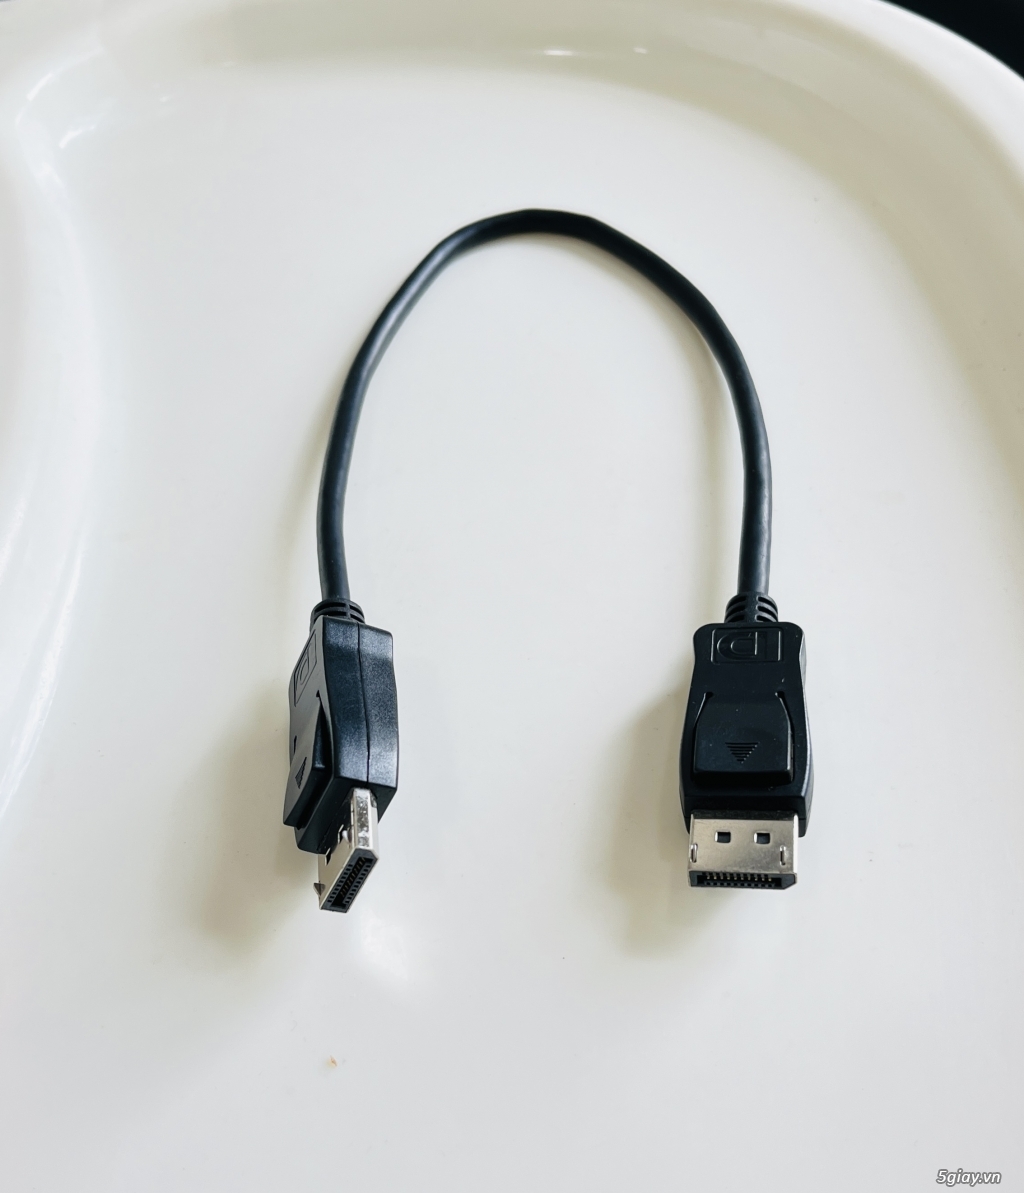 Full các loại cáp HDMI - VGA - DVI - Nguồn- FAN - Audio - USB - CAMERA - 3